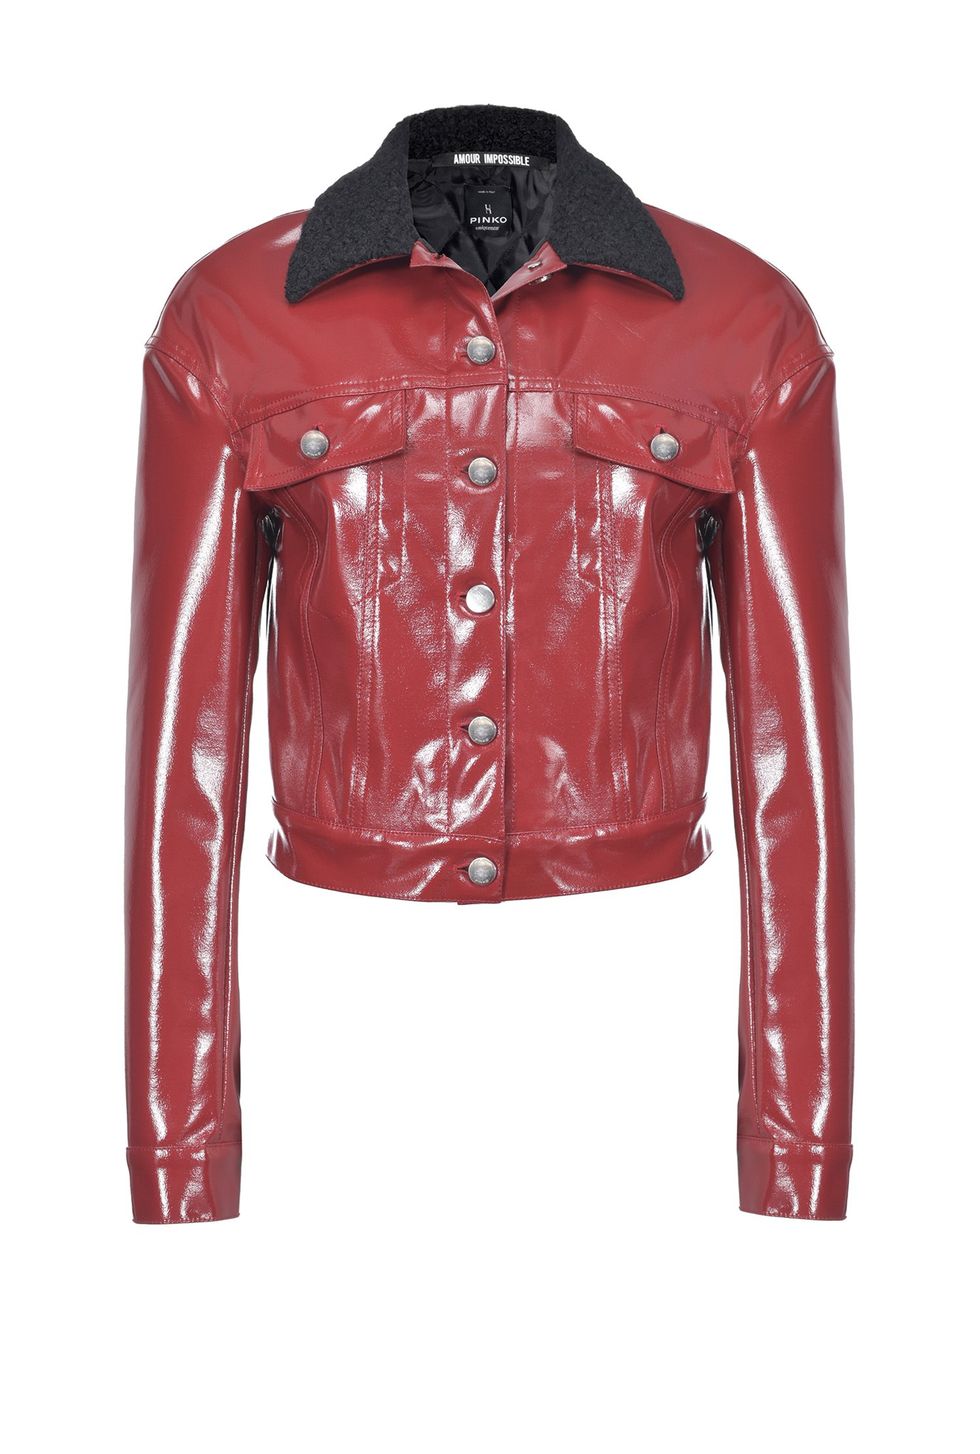 Clothing, Jacket, Outerwear, Leather, Red, Leather jacket, Sleeve, Orange, Textile, Latex, 